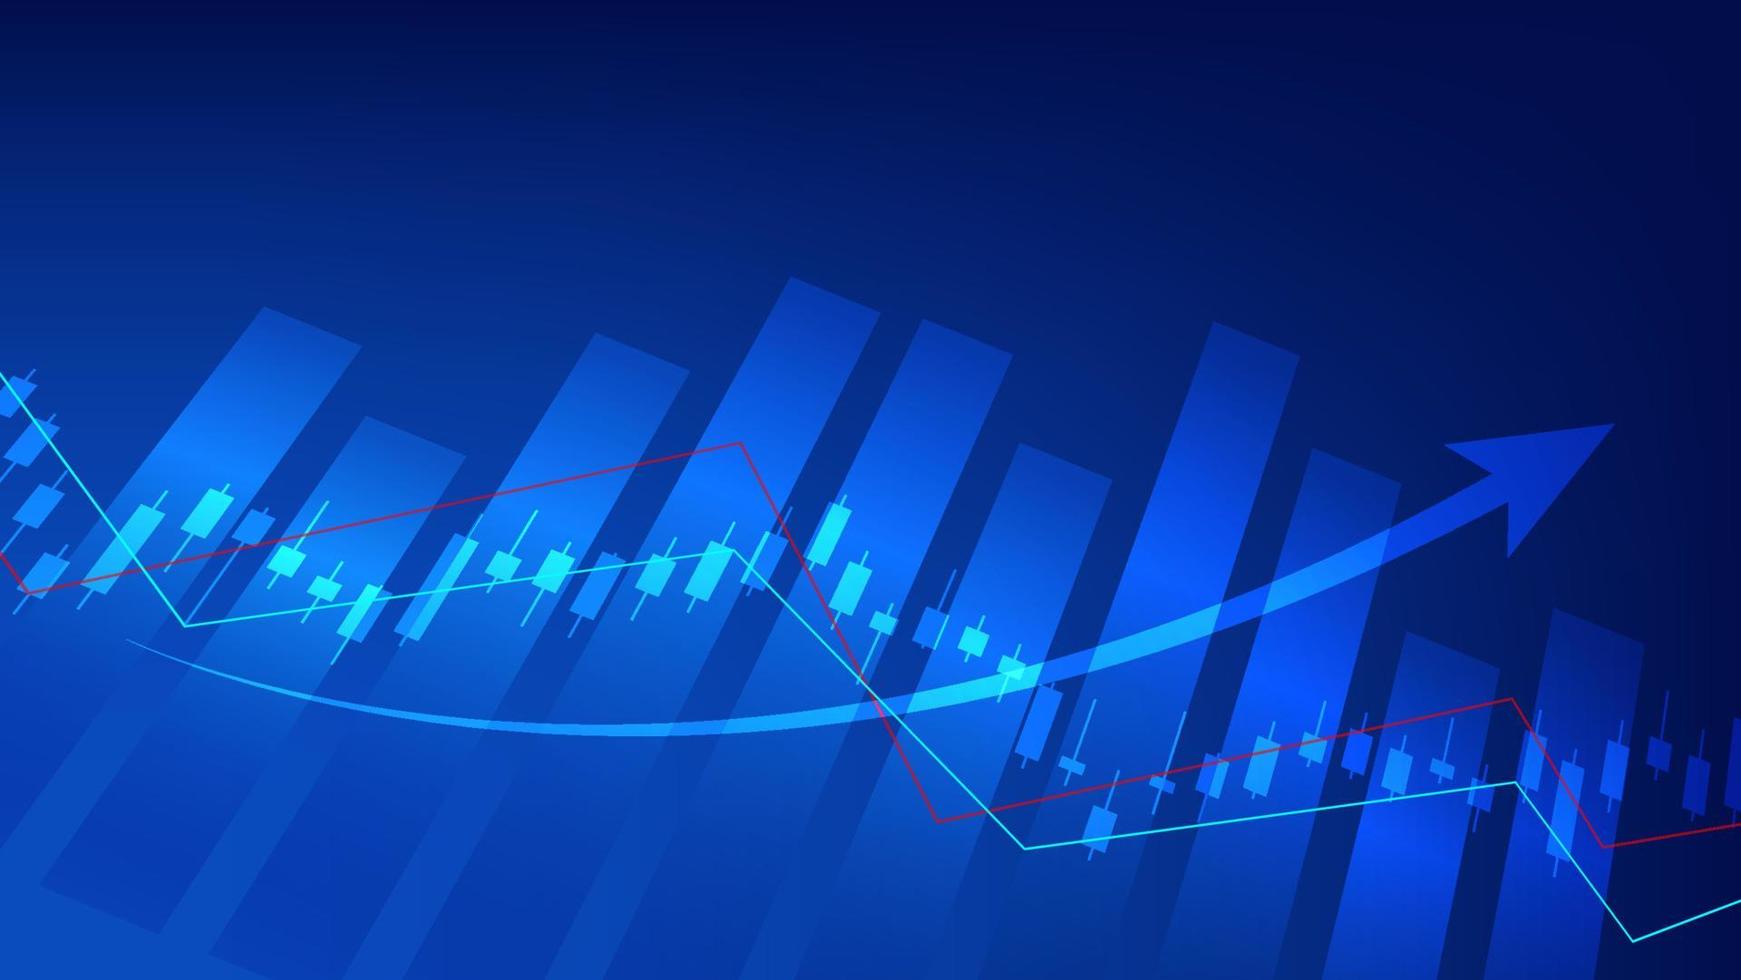 ekonomi och finansiera begrepp. finansiell företag investering statistik med stock marknadsföra ljusstakar och bar Diagram på blå bakgrund vektor